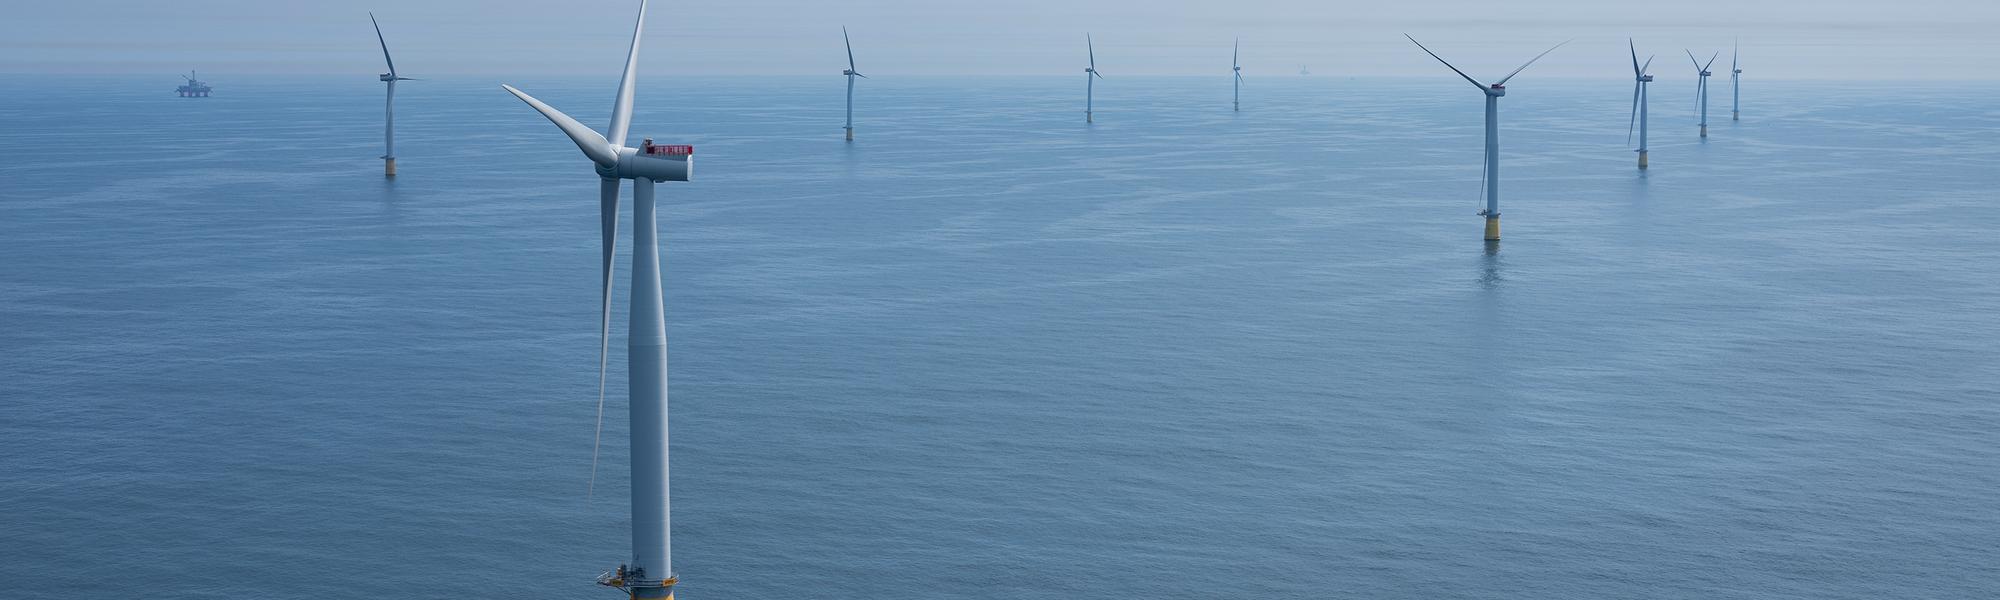 Wind turbines. Photo